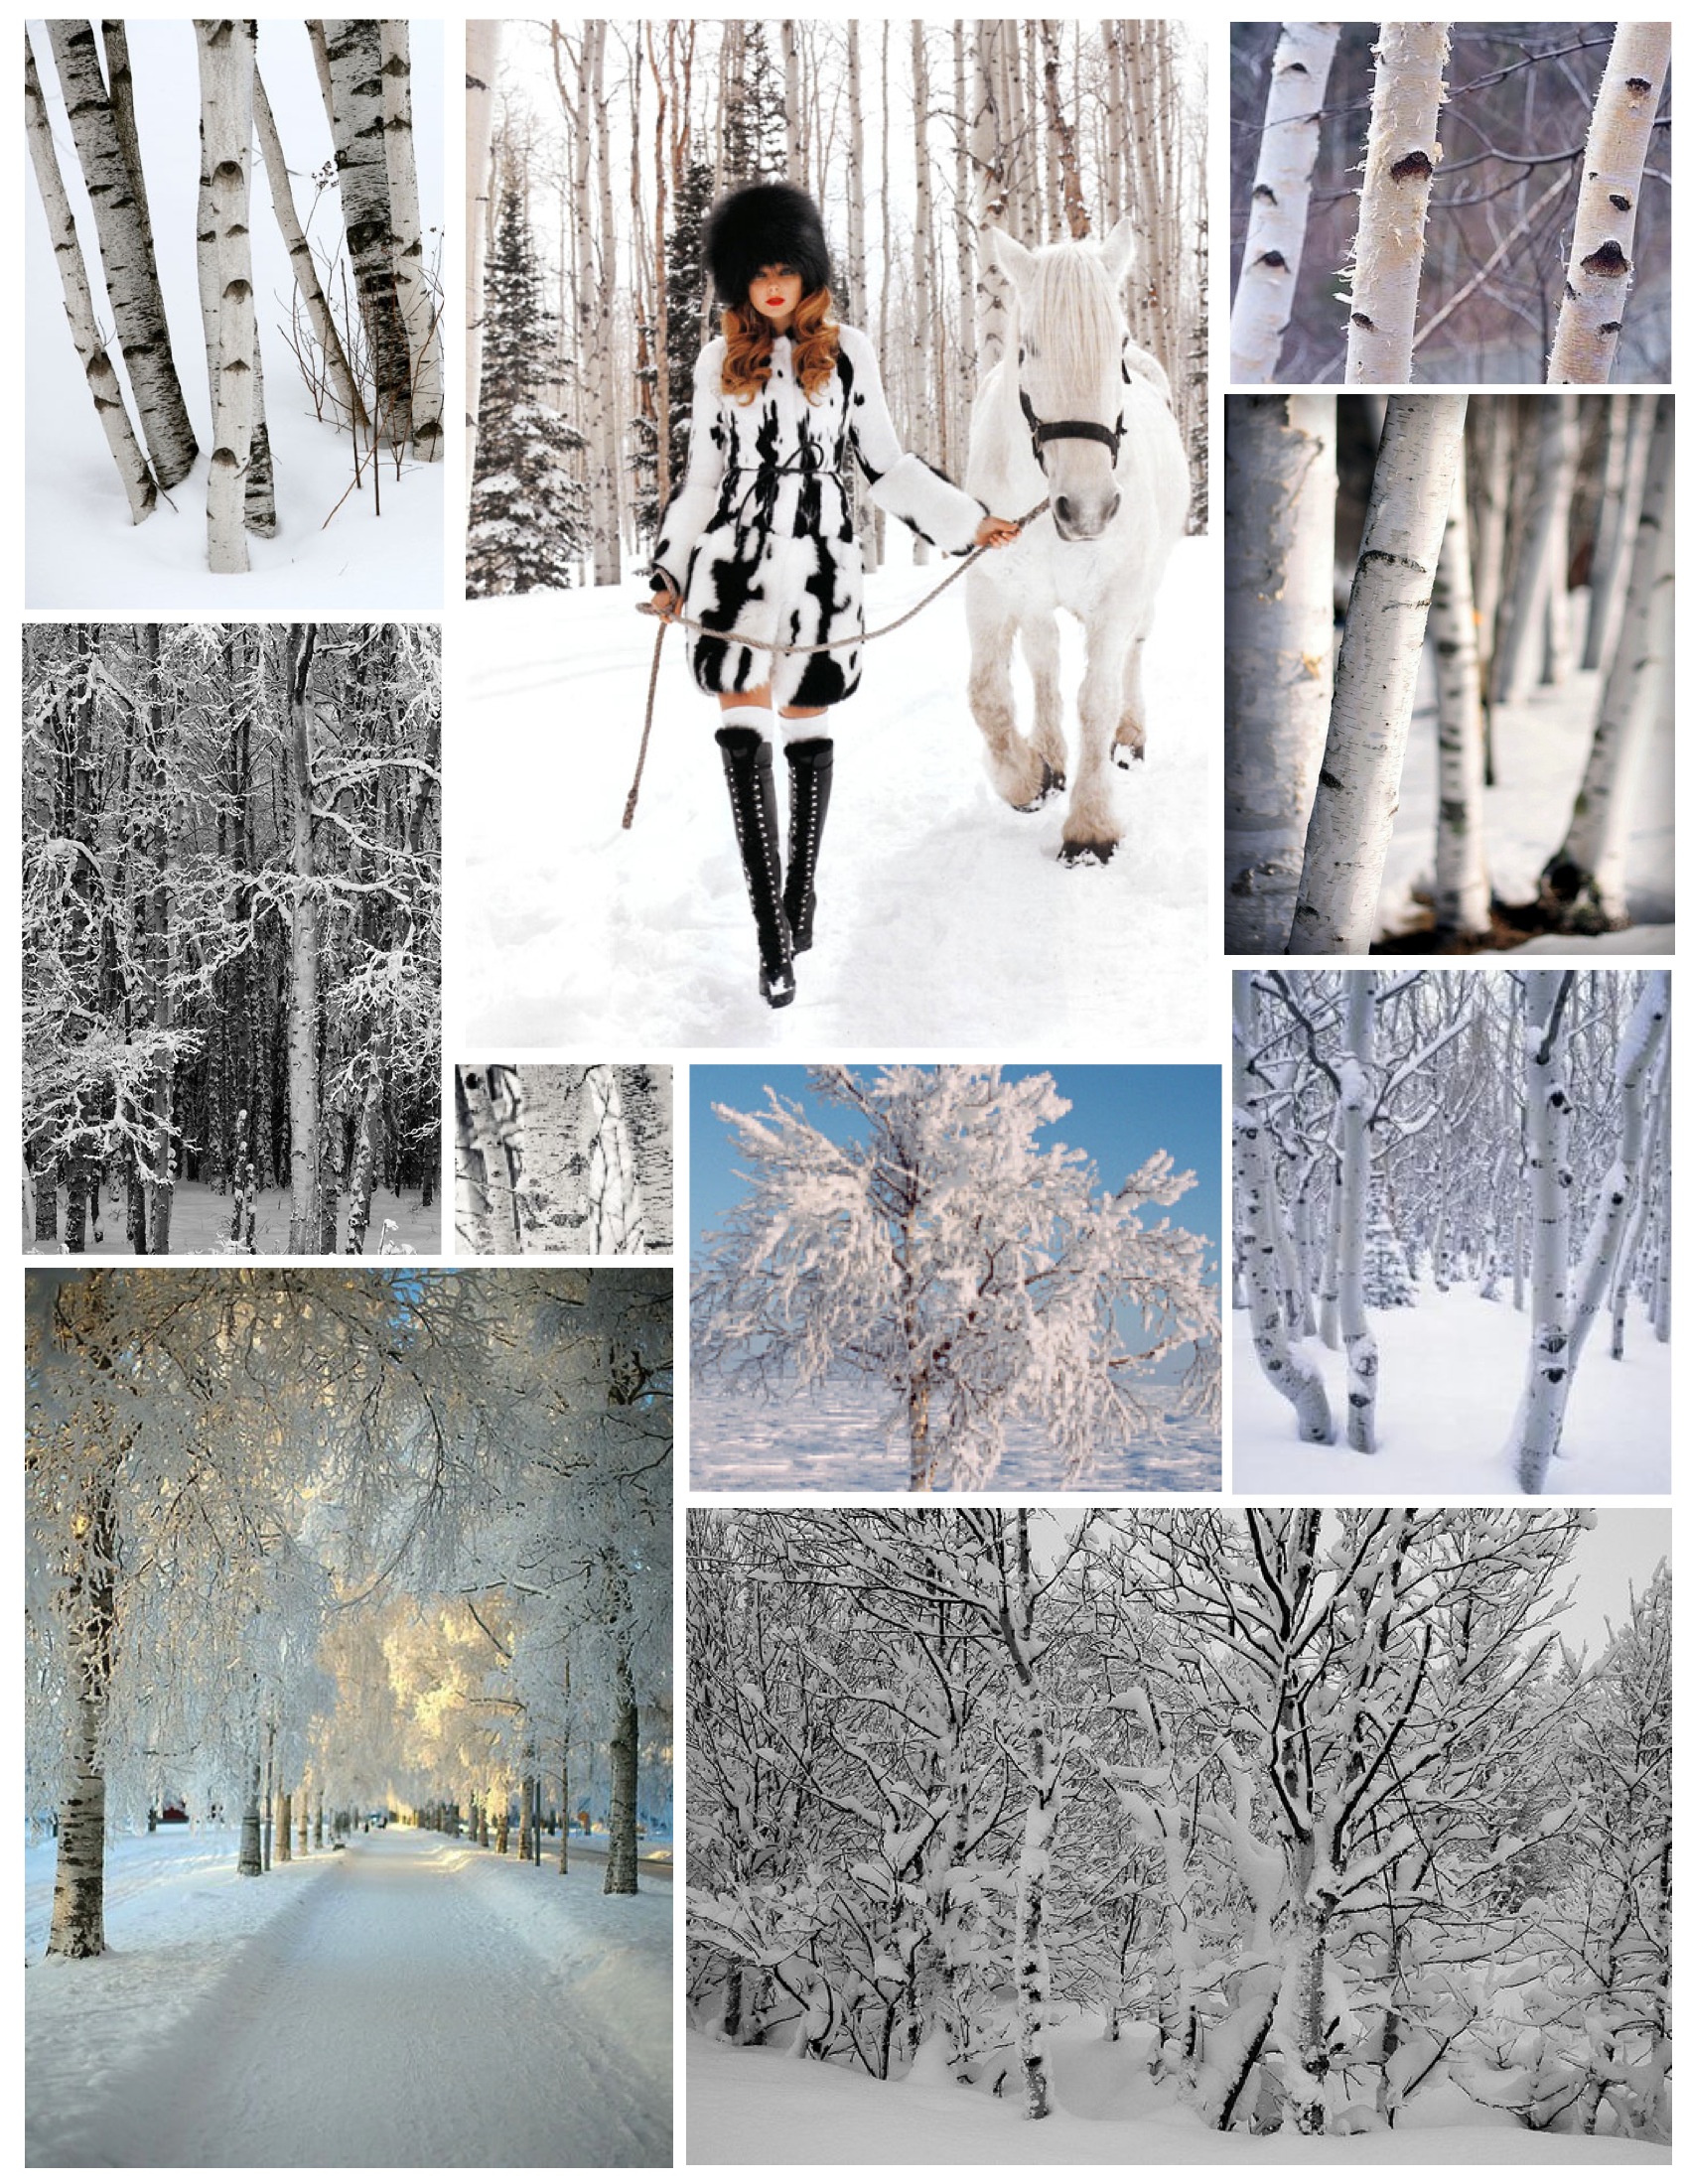 Winter's Splendor: The White Birch Tree In Snowfall | House Appeal